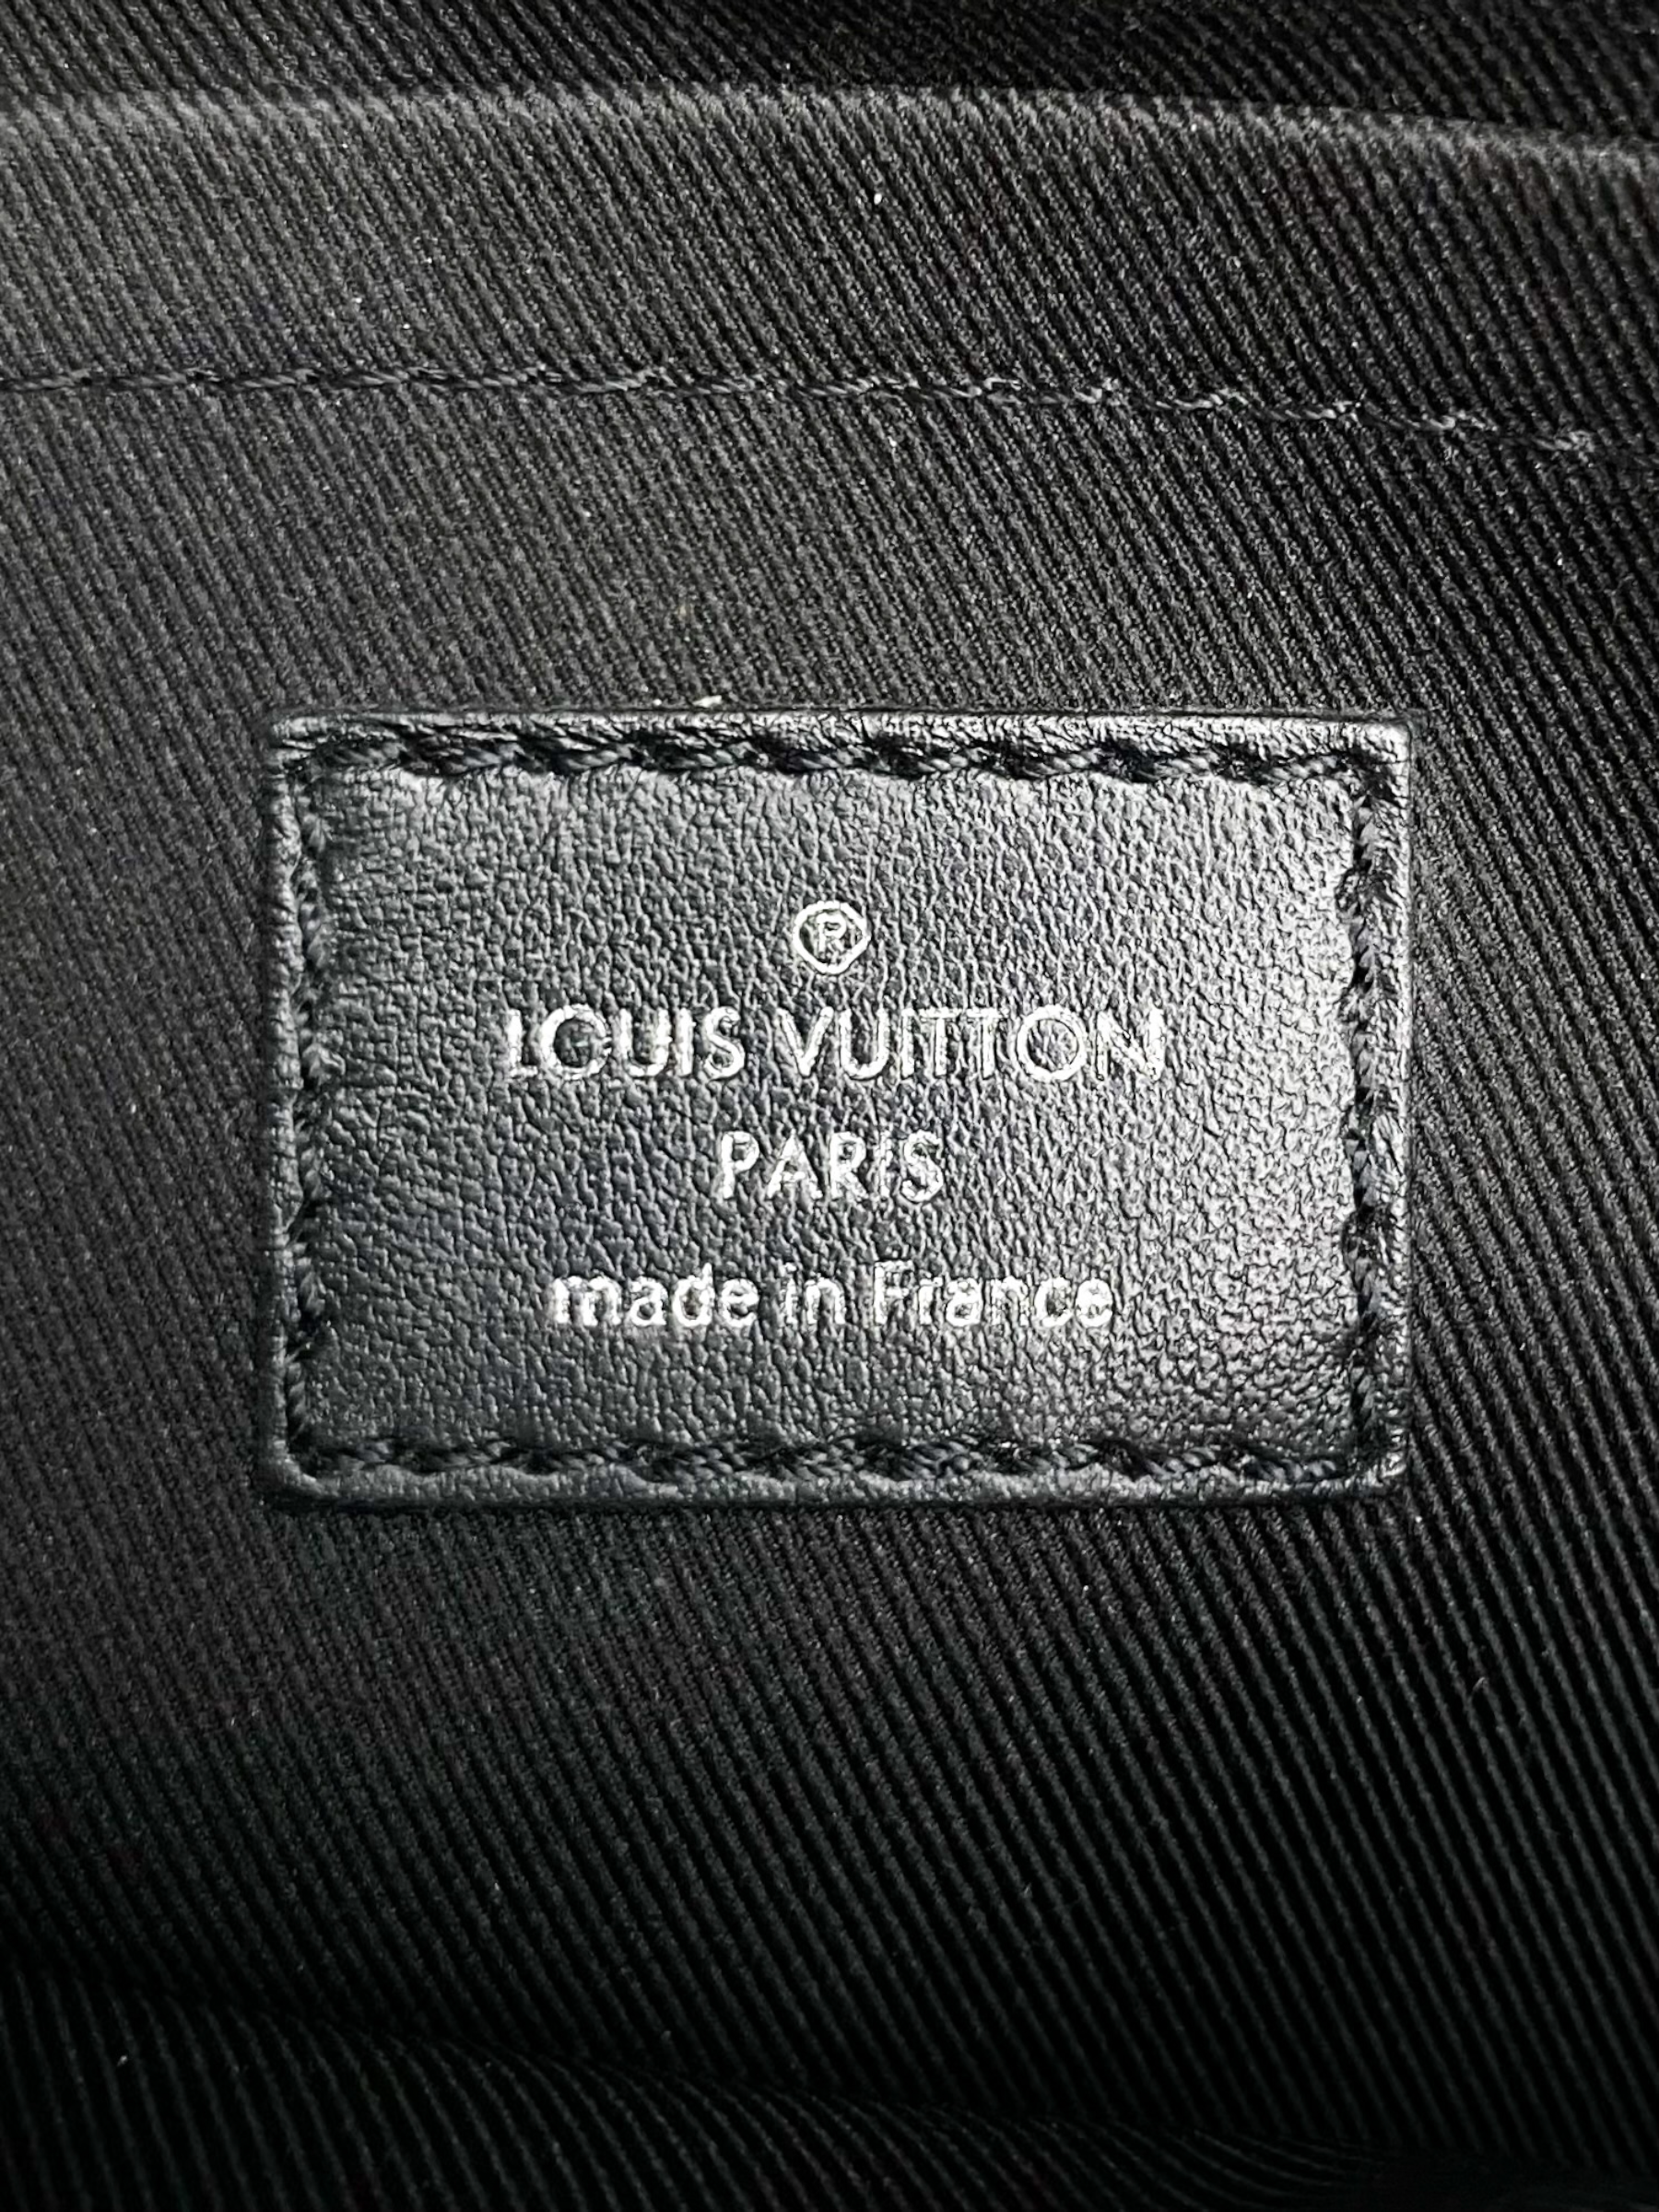 Louis Vuitton Damier  3D Sling